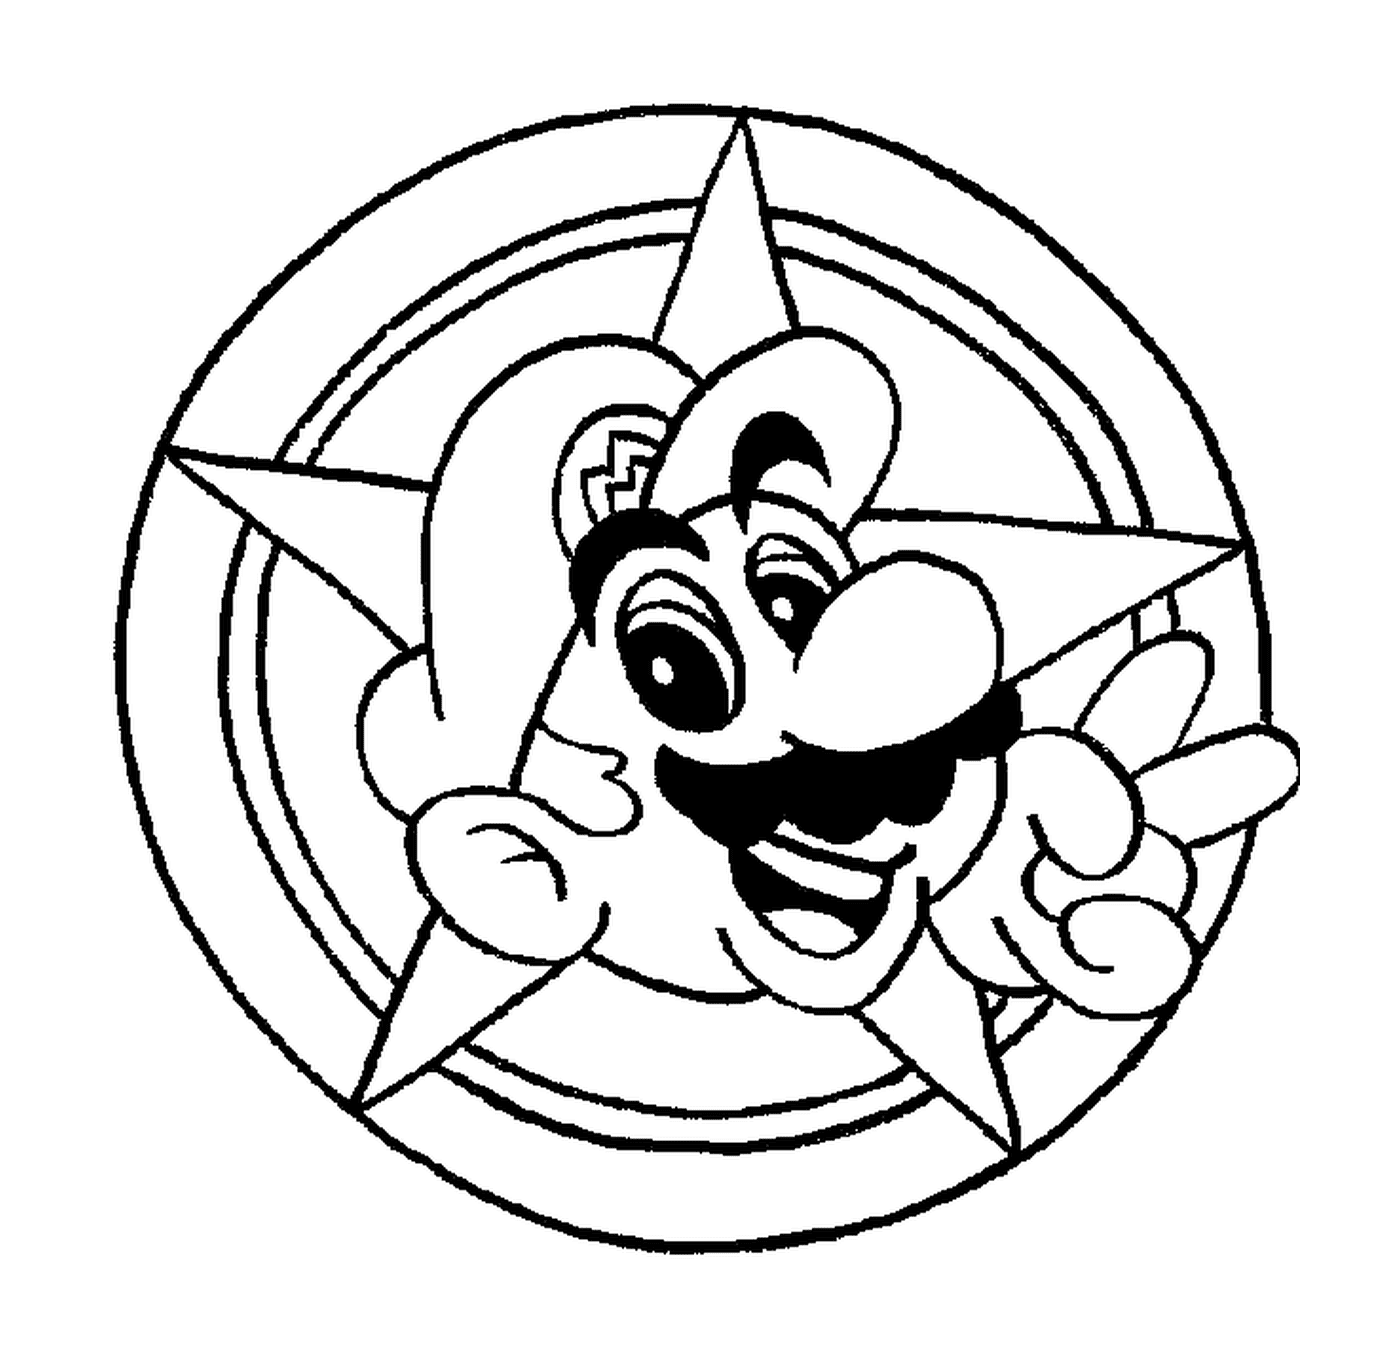  A cabeça de Mario em um círculo 